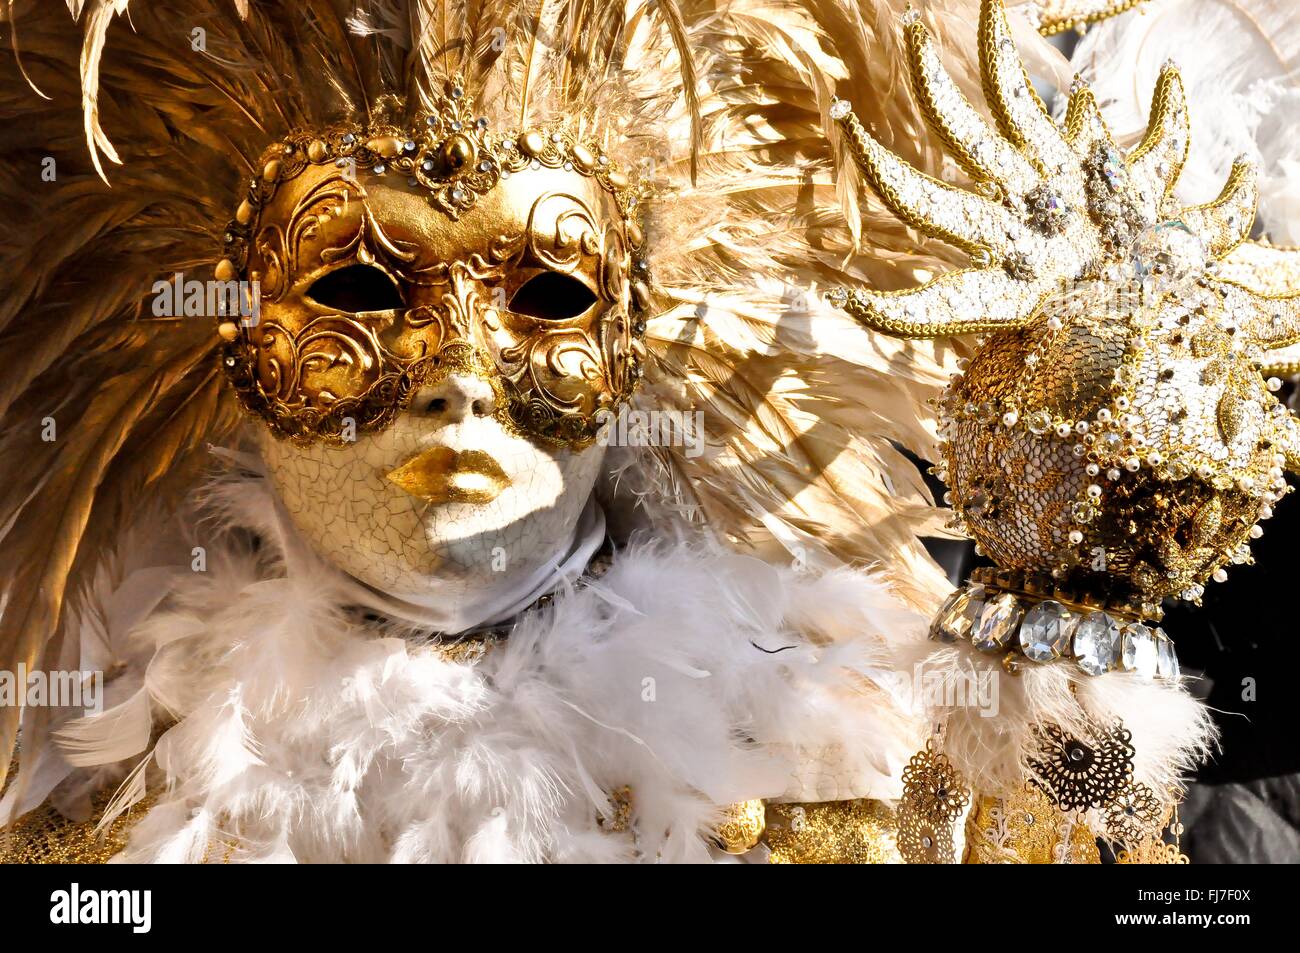 Eine Frau trägt eine aufwendige venezianische Bauta Maske und Kostüm während des jährlichen Karnevals von Venedig in Venedig, Italien. Karneval läuft offiziell für 10 Tage auf die christliche Feier der Fastenzeit endet. Stockfoto